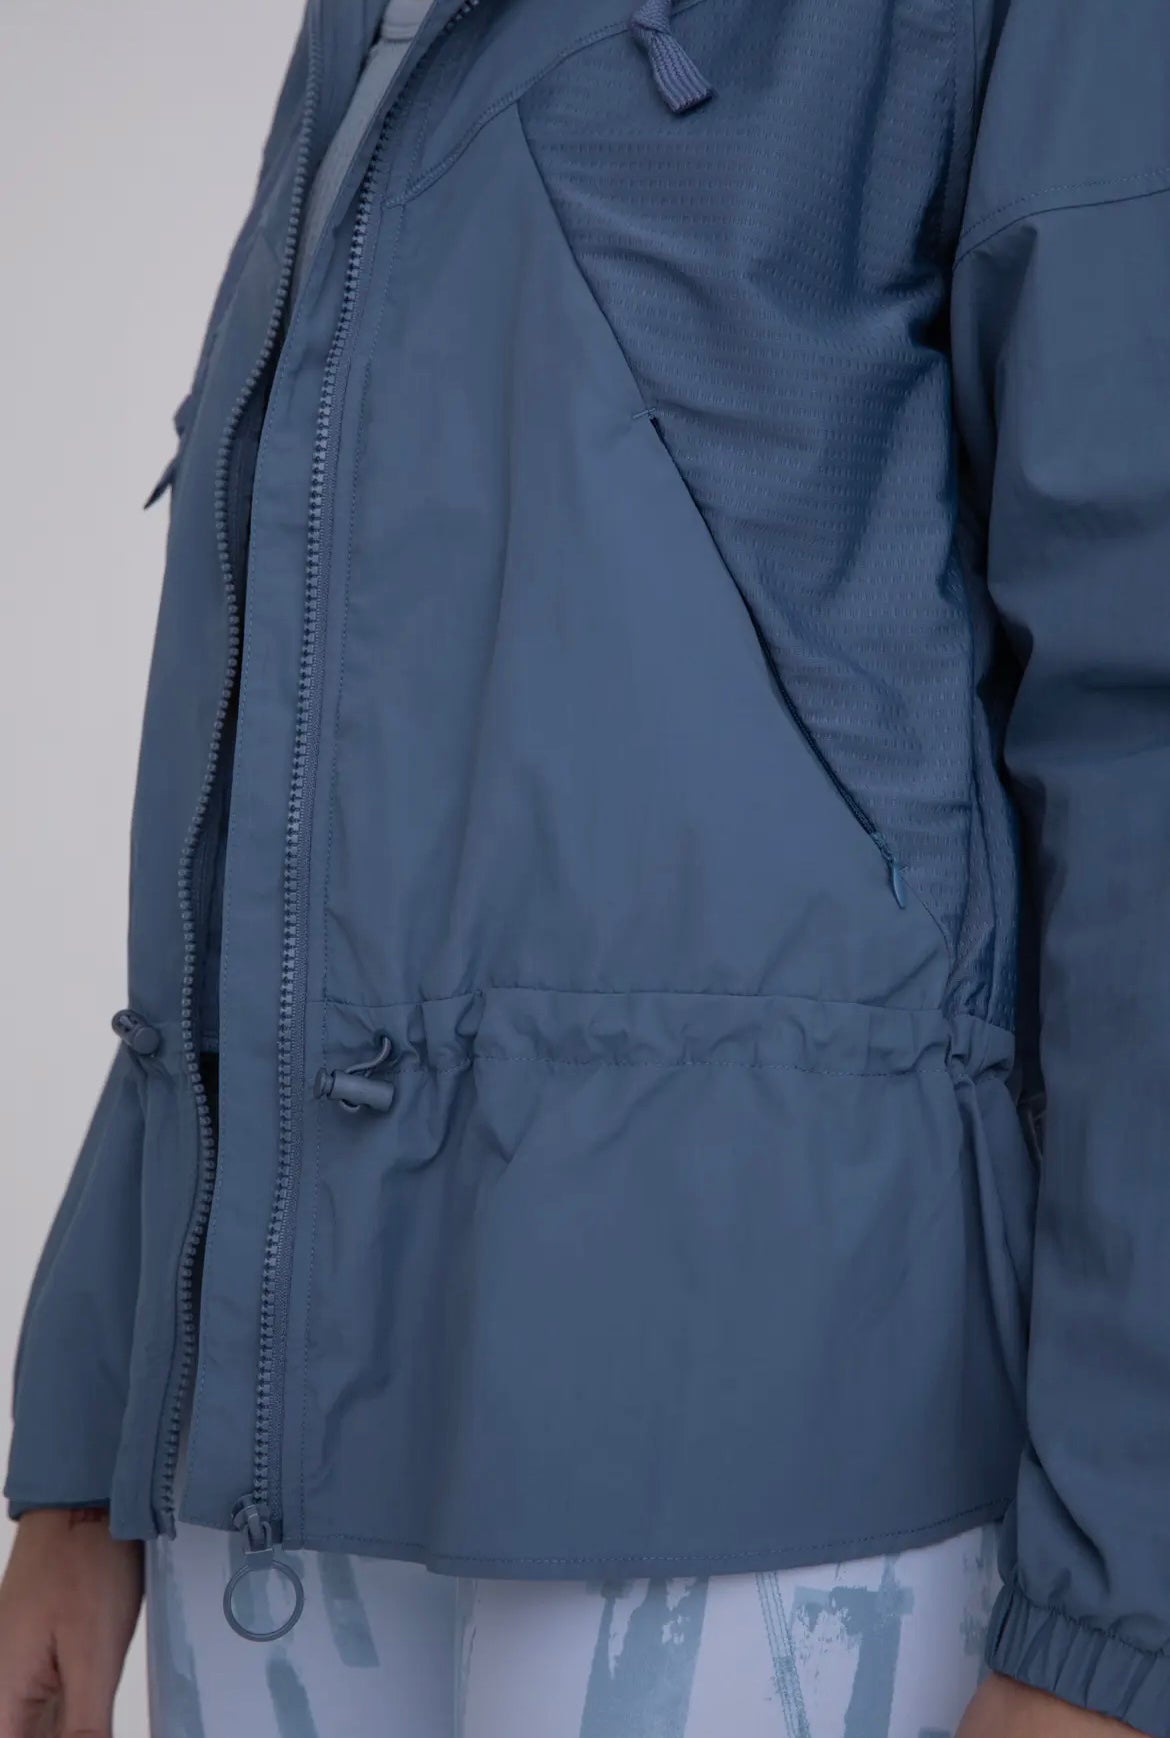 Adjustable Water-Resistant Active Jacket